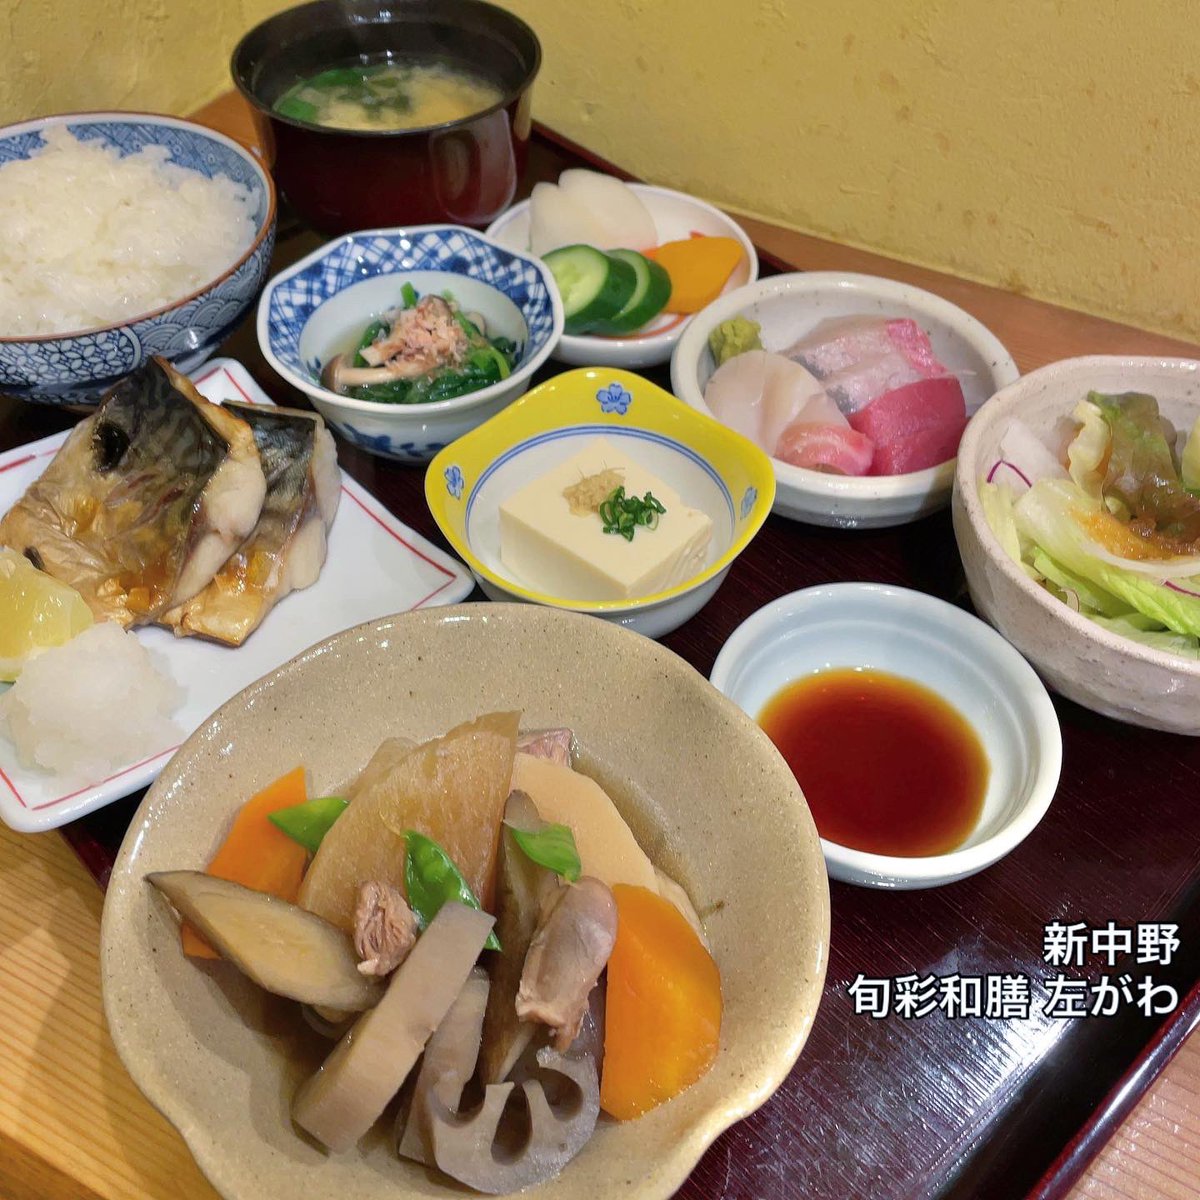 〜！ 旬彩和膳 左がわさんだよ〜！ 料亭のような豪華な和食ランチ〜！ これで1630円なり〜！ ごっつぁんです〜！😋😋😋